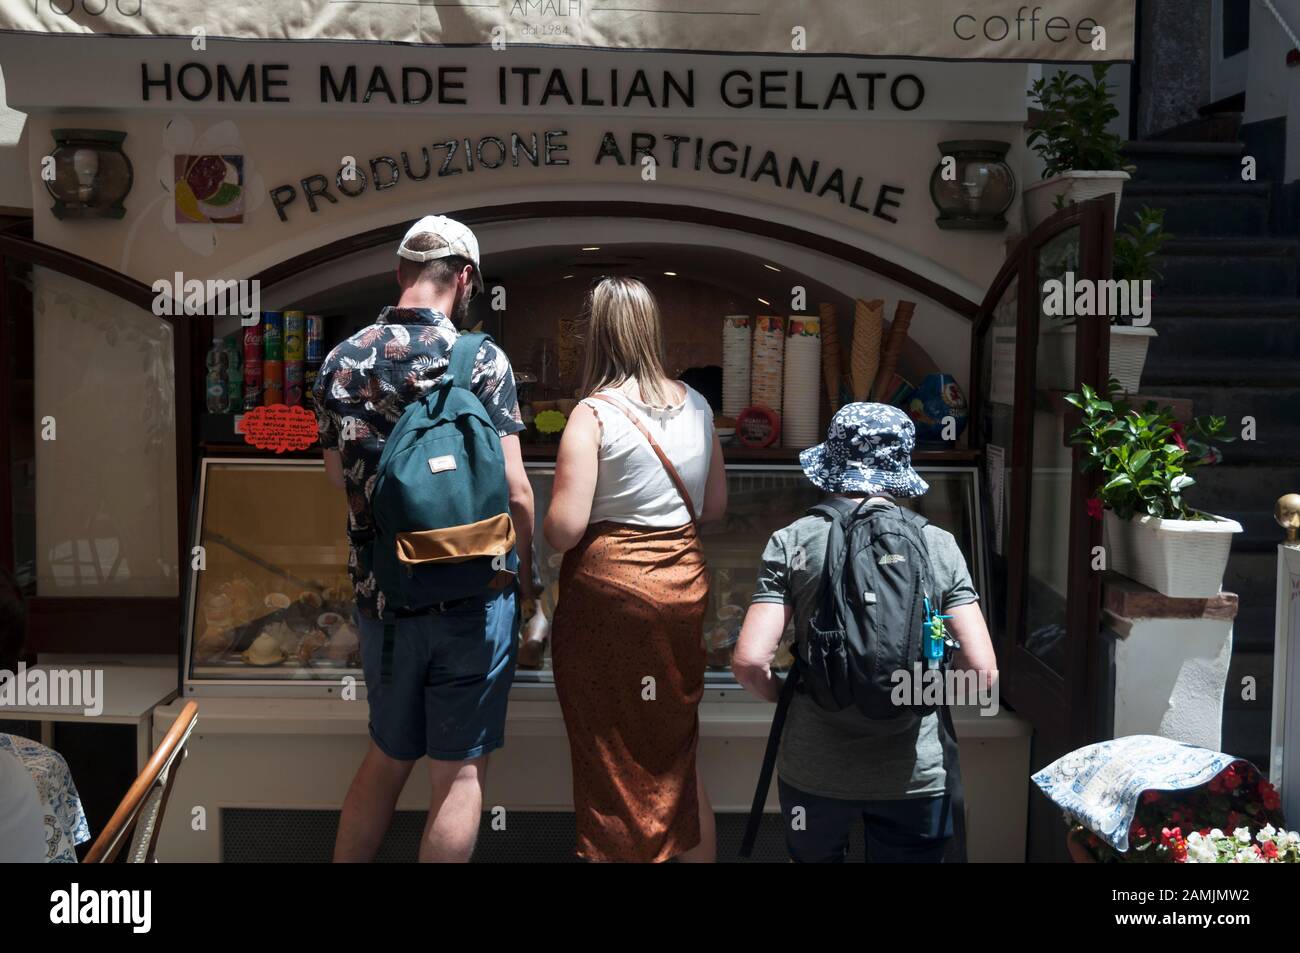 Die Besucher sehen sich die Angebote an einem hausgemachten italienischen Gelato Place in Amalfi, dem zentralen Teil der gleichnamigen Amalfiküste, Italien an Stockfoto